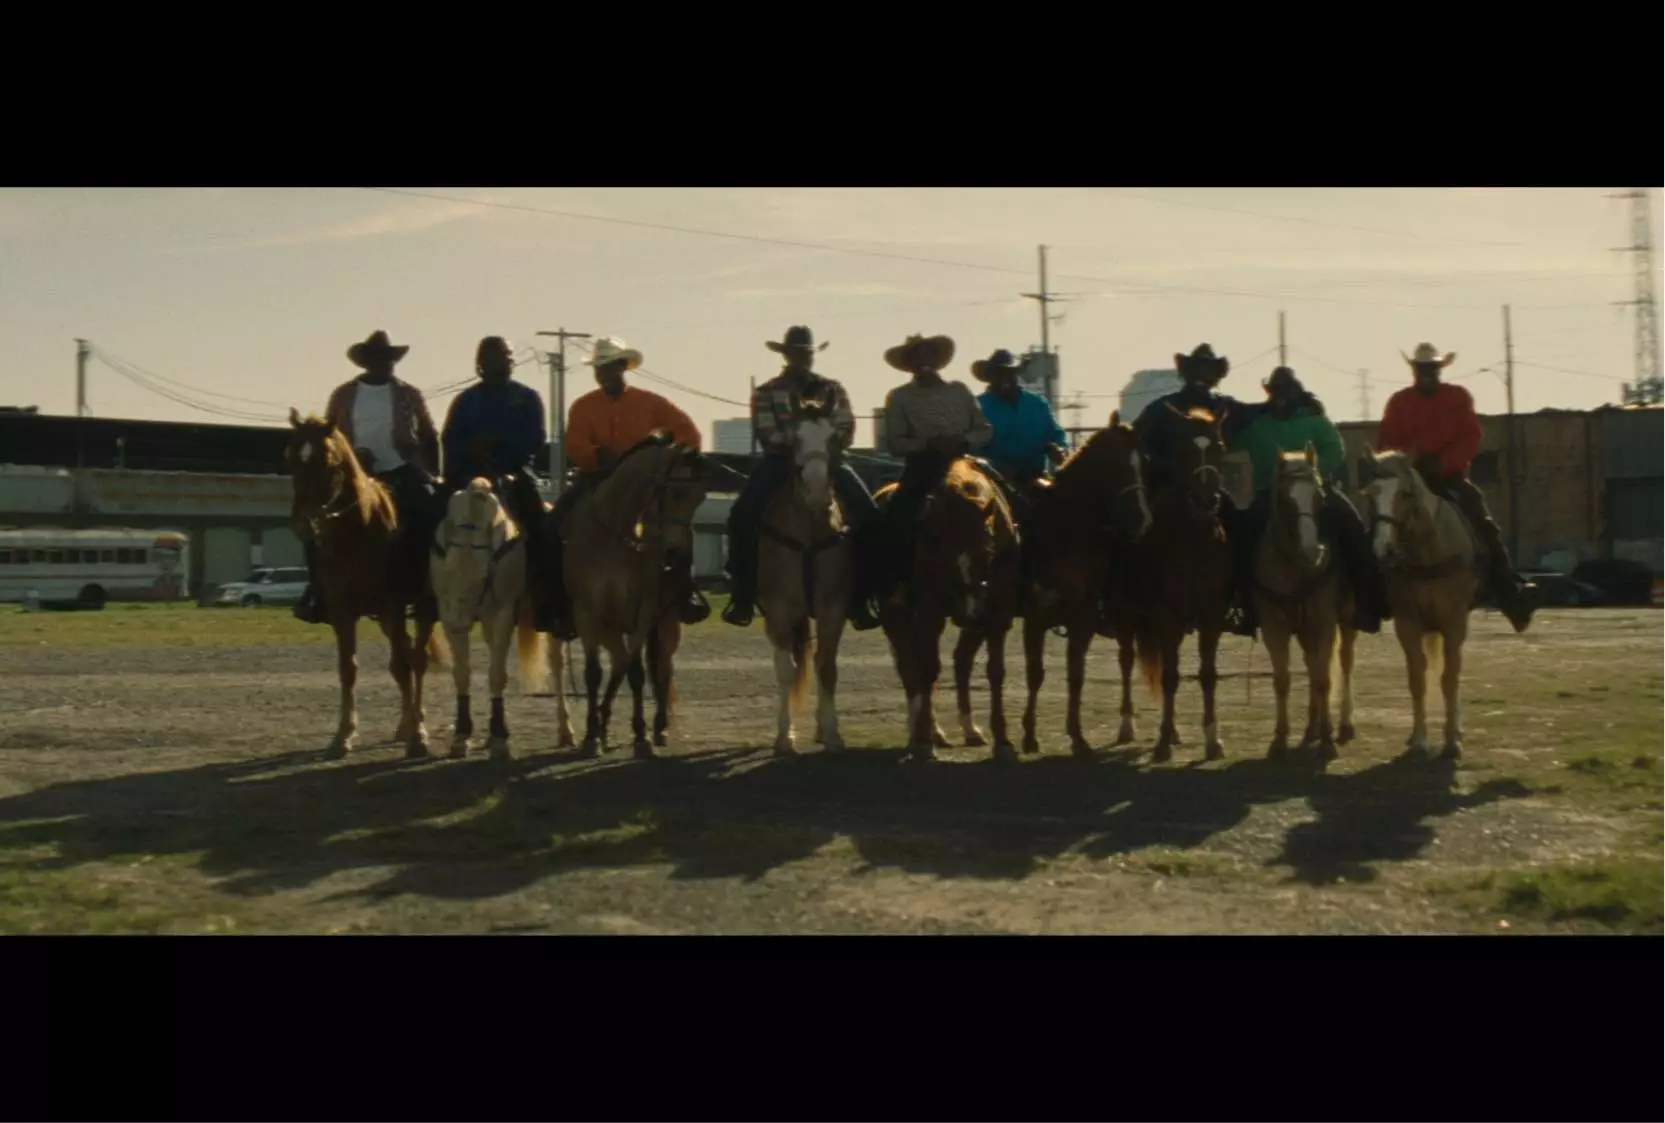 Eight men on horseback